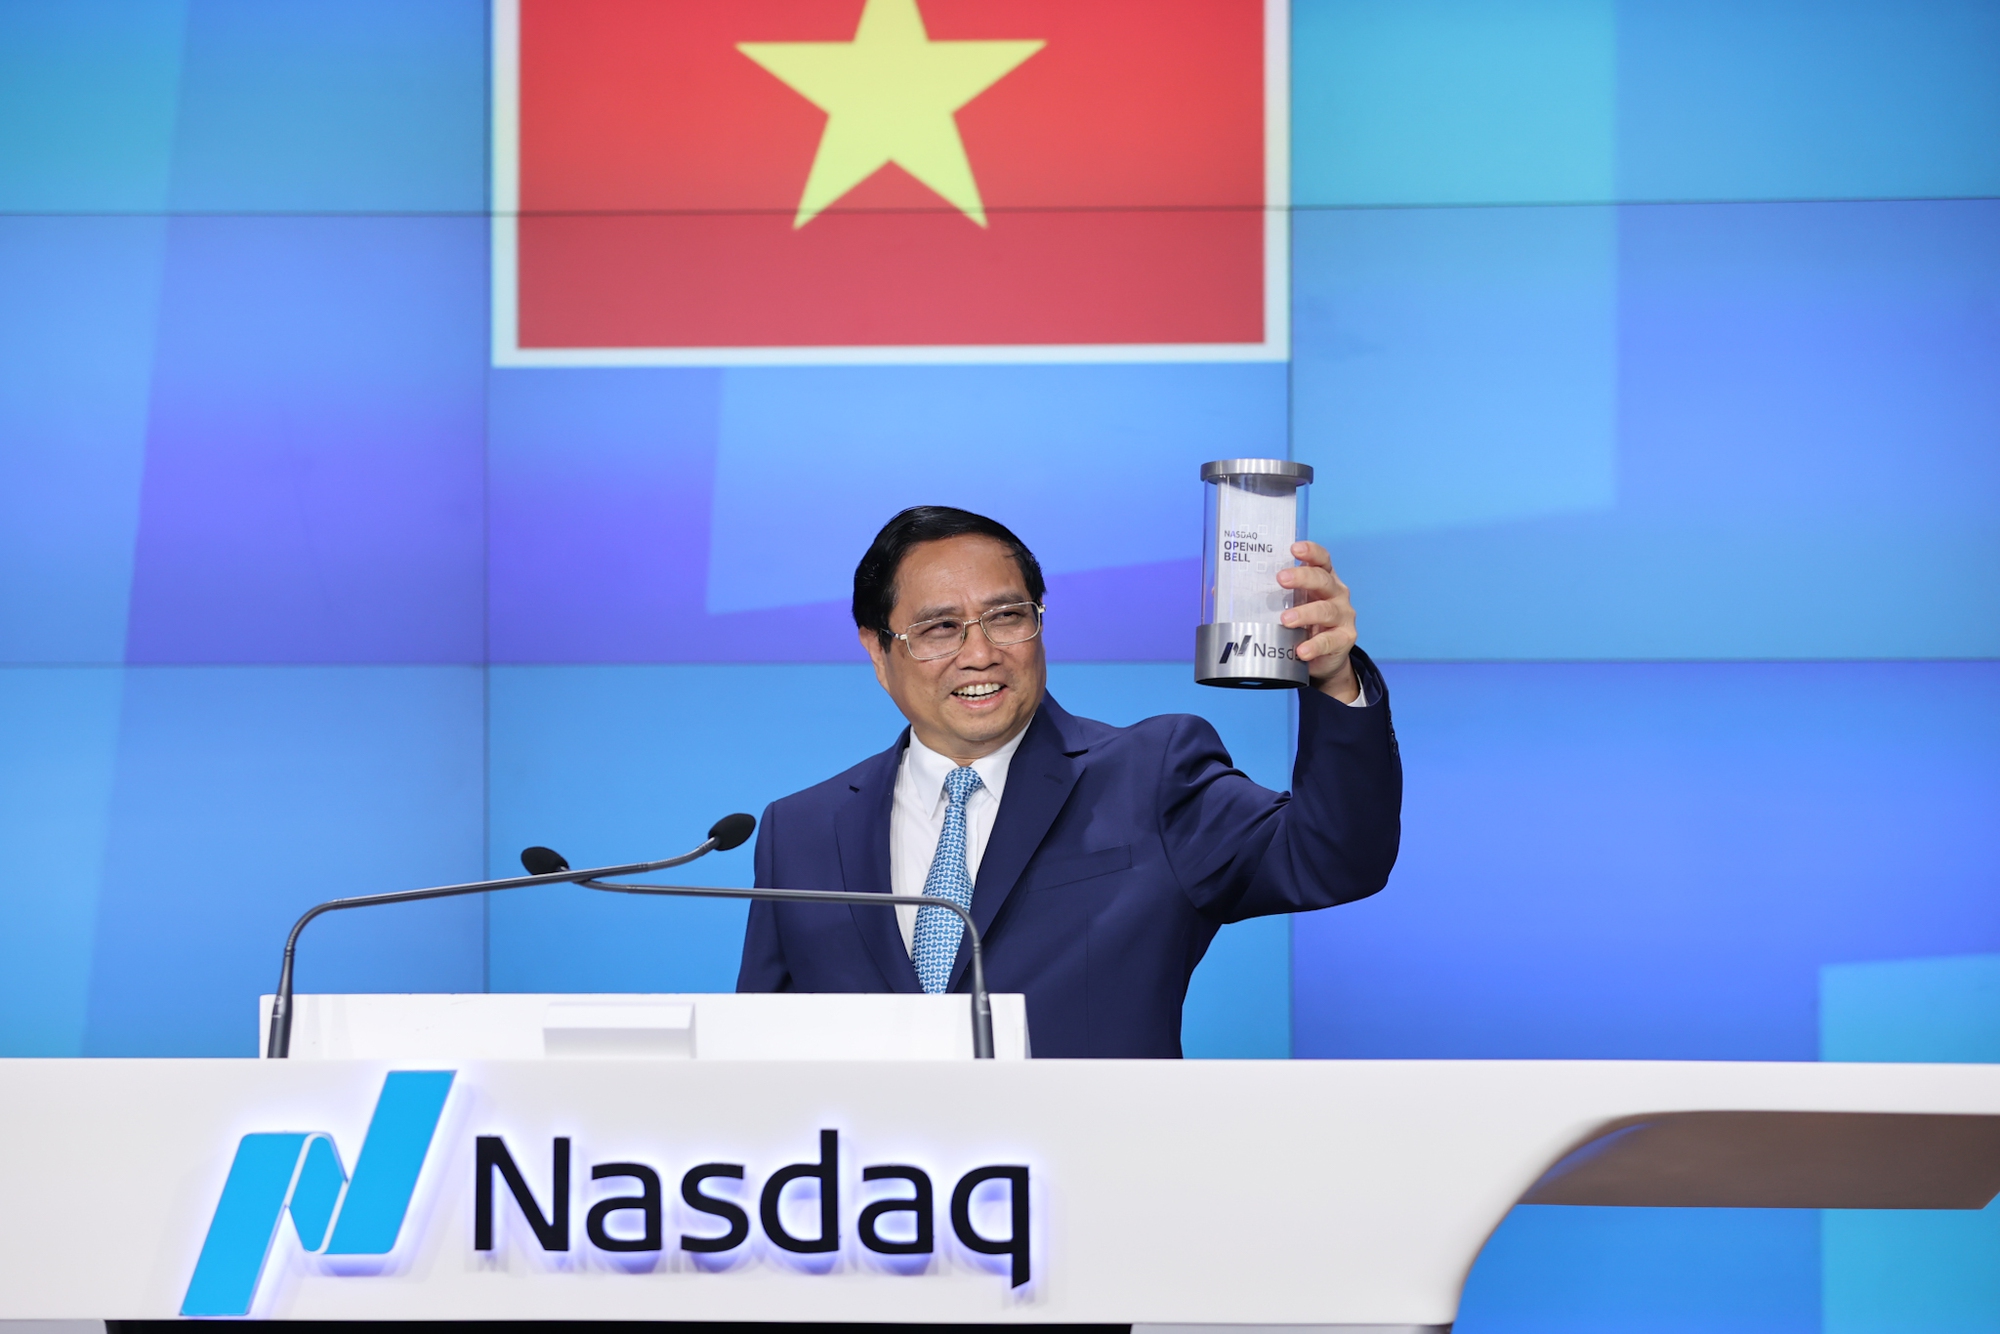 Thủ tướng rung chuông tại Sàn chứng khoán NASDAQ, kêu gọi các nhà đầu tư Hoa Kỳ - Ảnh 3.